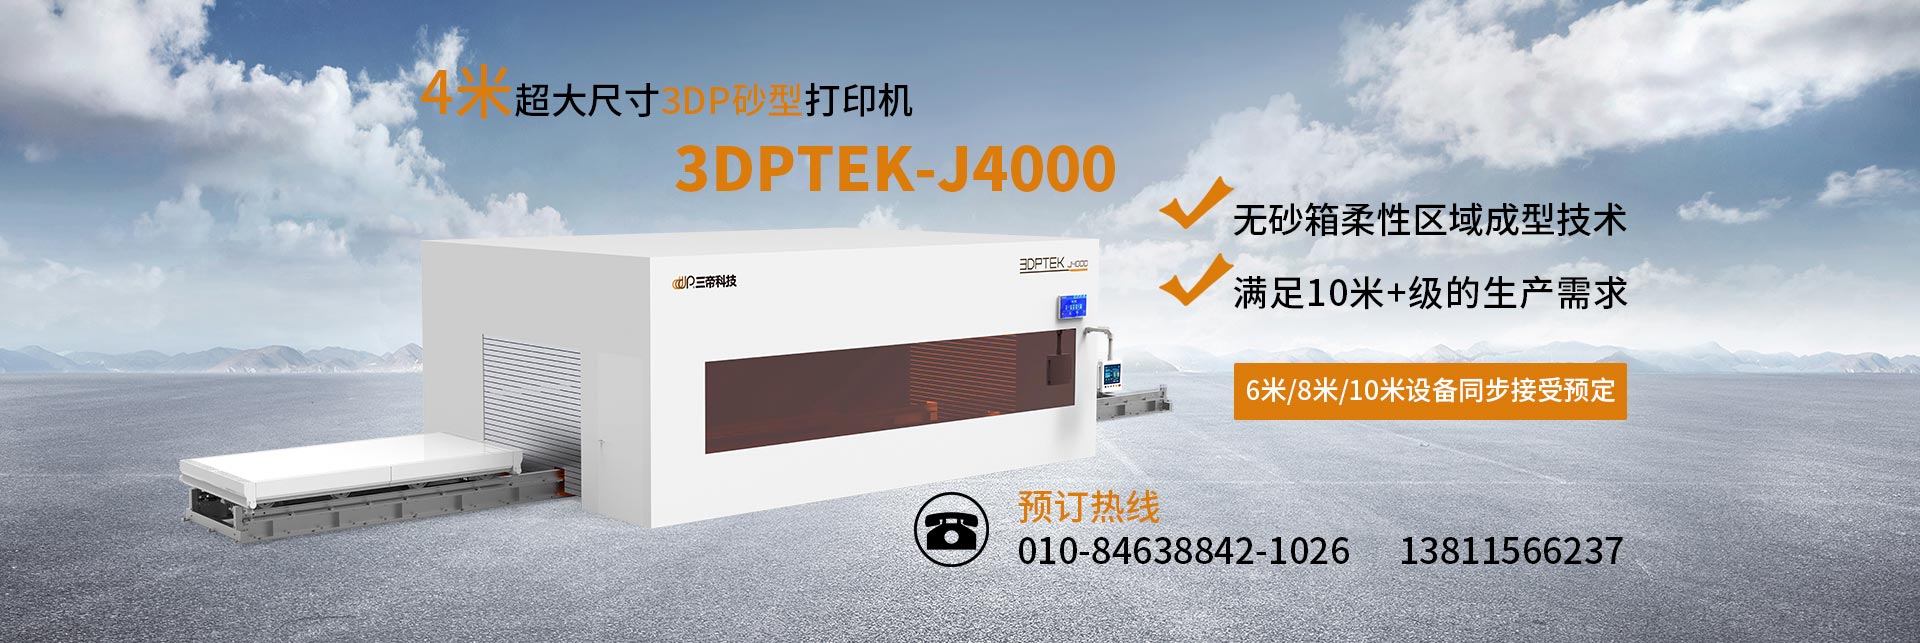 3DPTEK-J4000-New